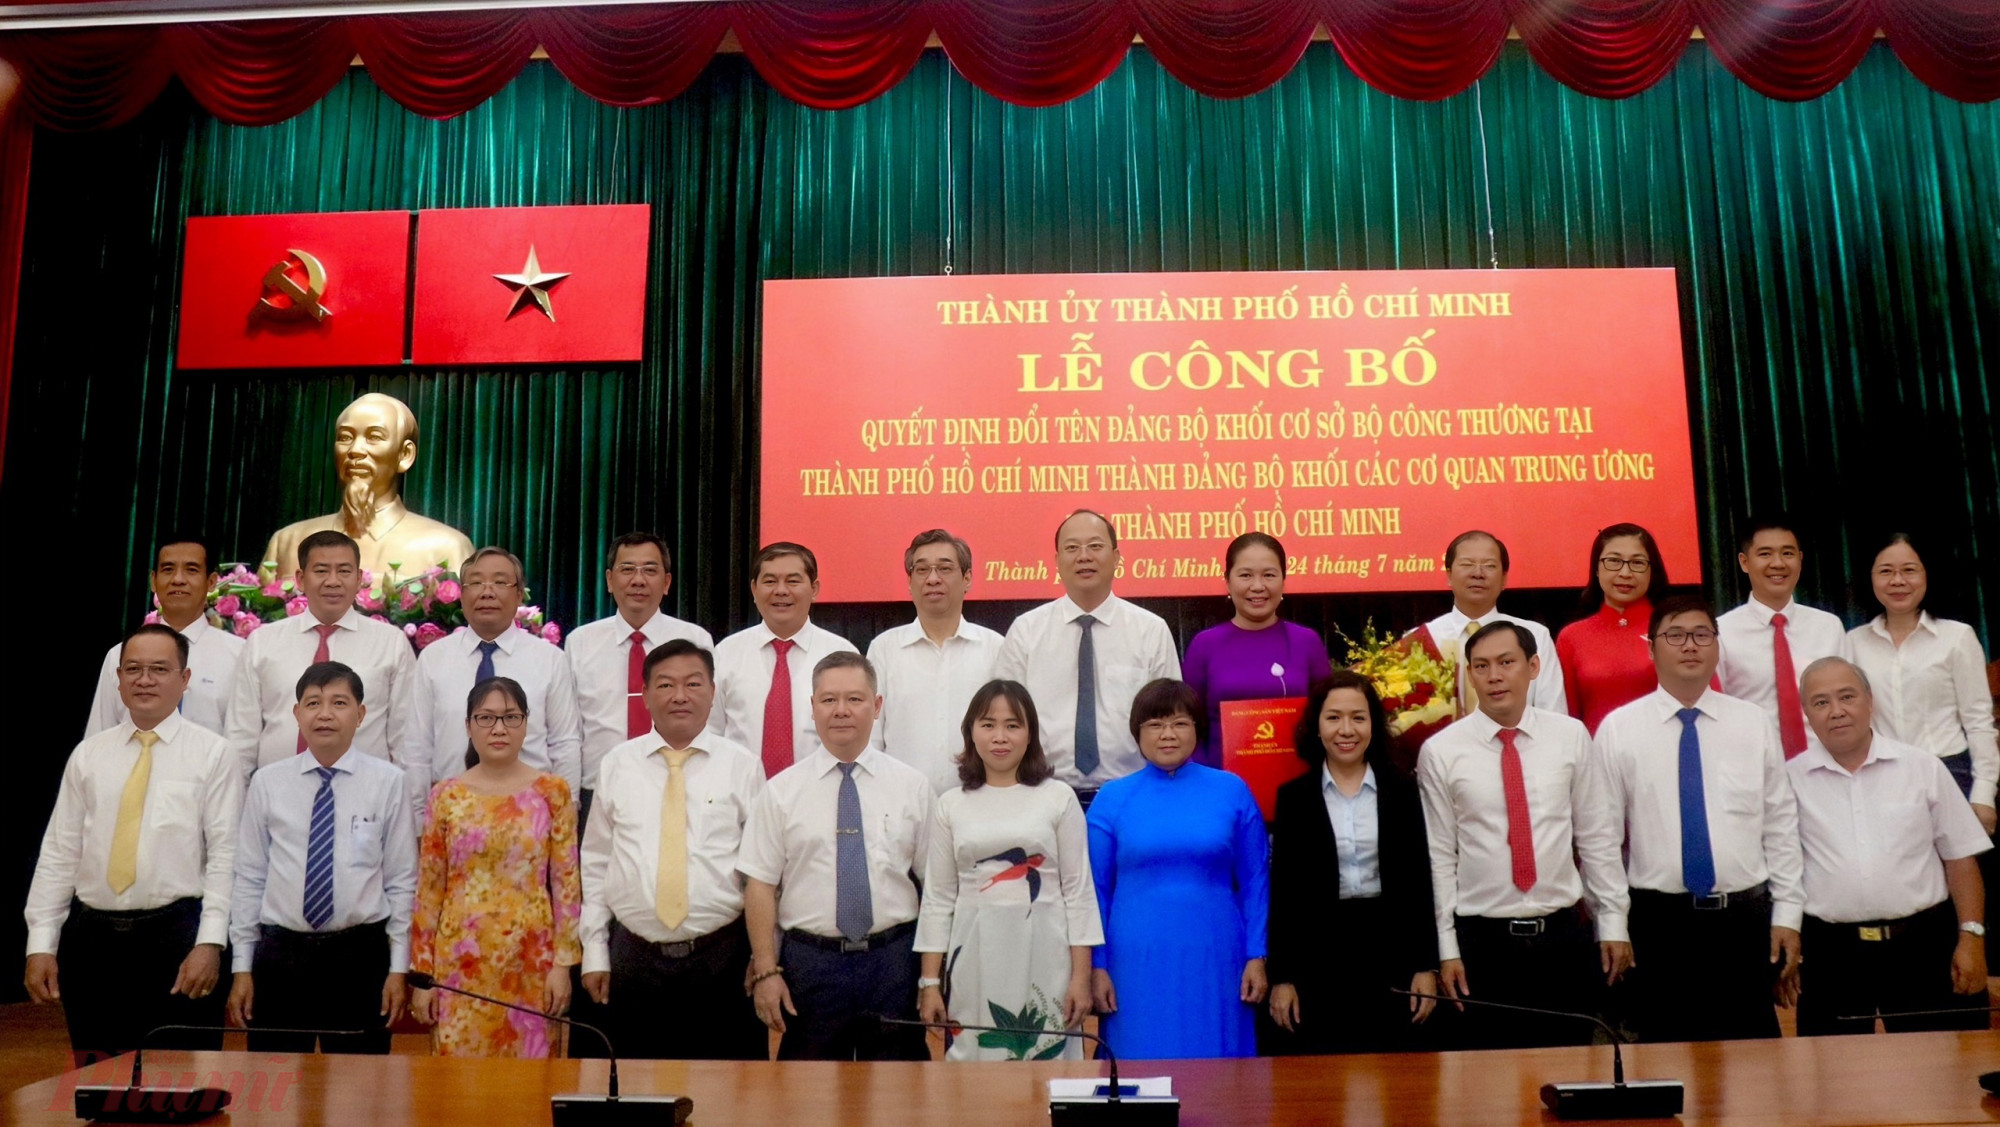 Phó Bí thư Thành ủy TPHCM Nguyễn Hồ Hải và các đại biểu chụp ảnh lưu niệm tại buổi lễ